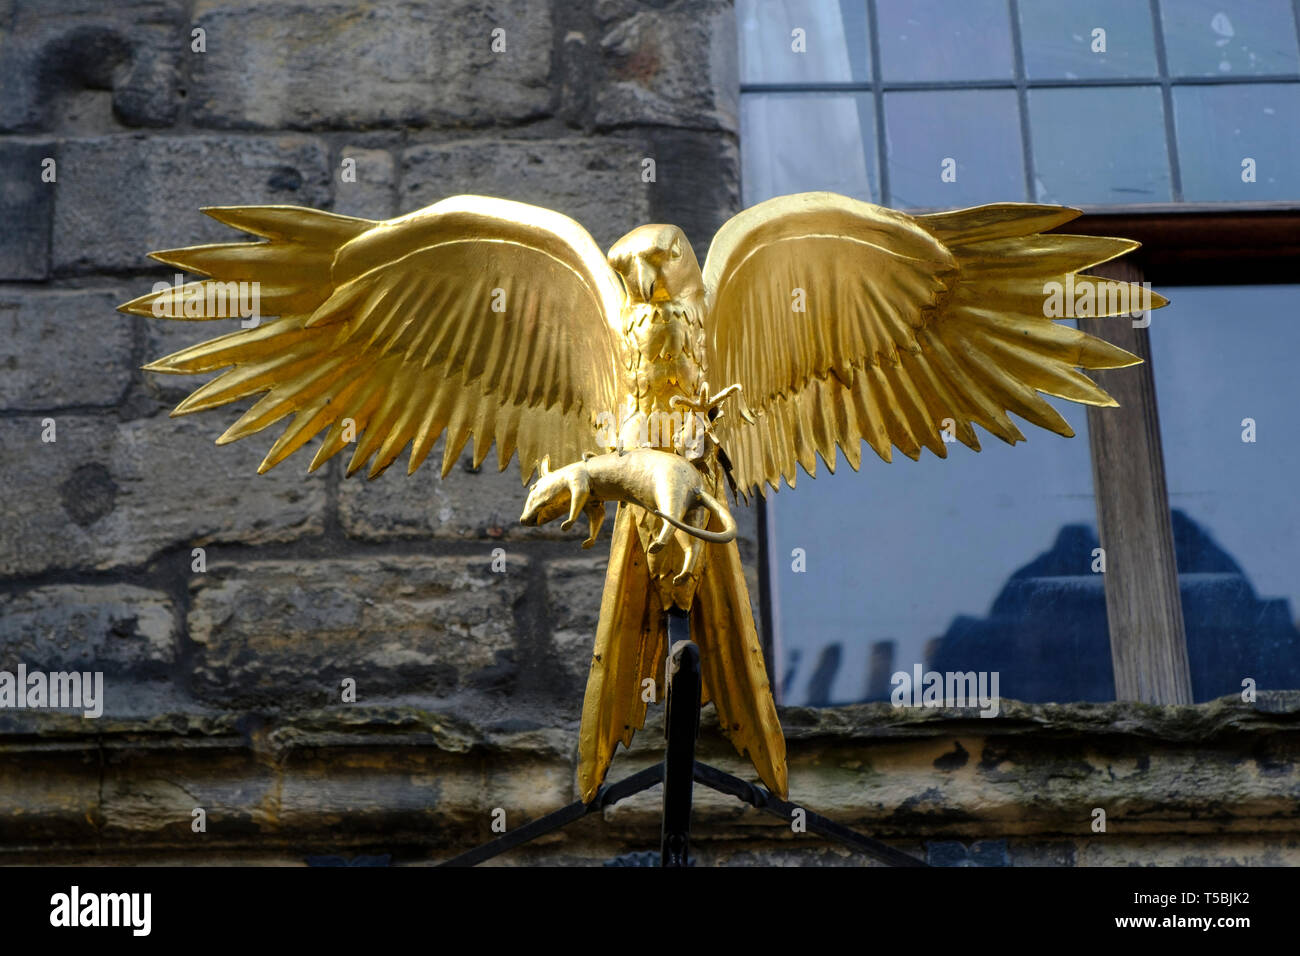 Oiseau doré à l'extérieur de Gladstone's Land immeuble ancien original à Lawnmarket dans la vieille ville d'Édimbourg, Écosse, Royaume-Uni Banque D'Images